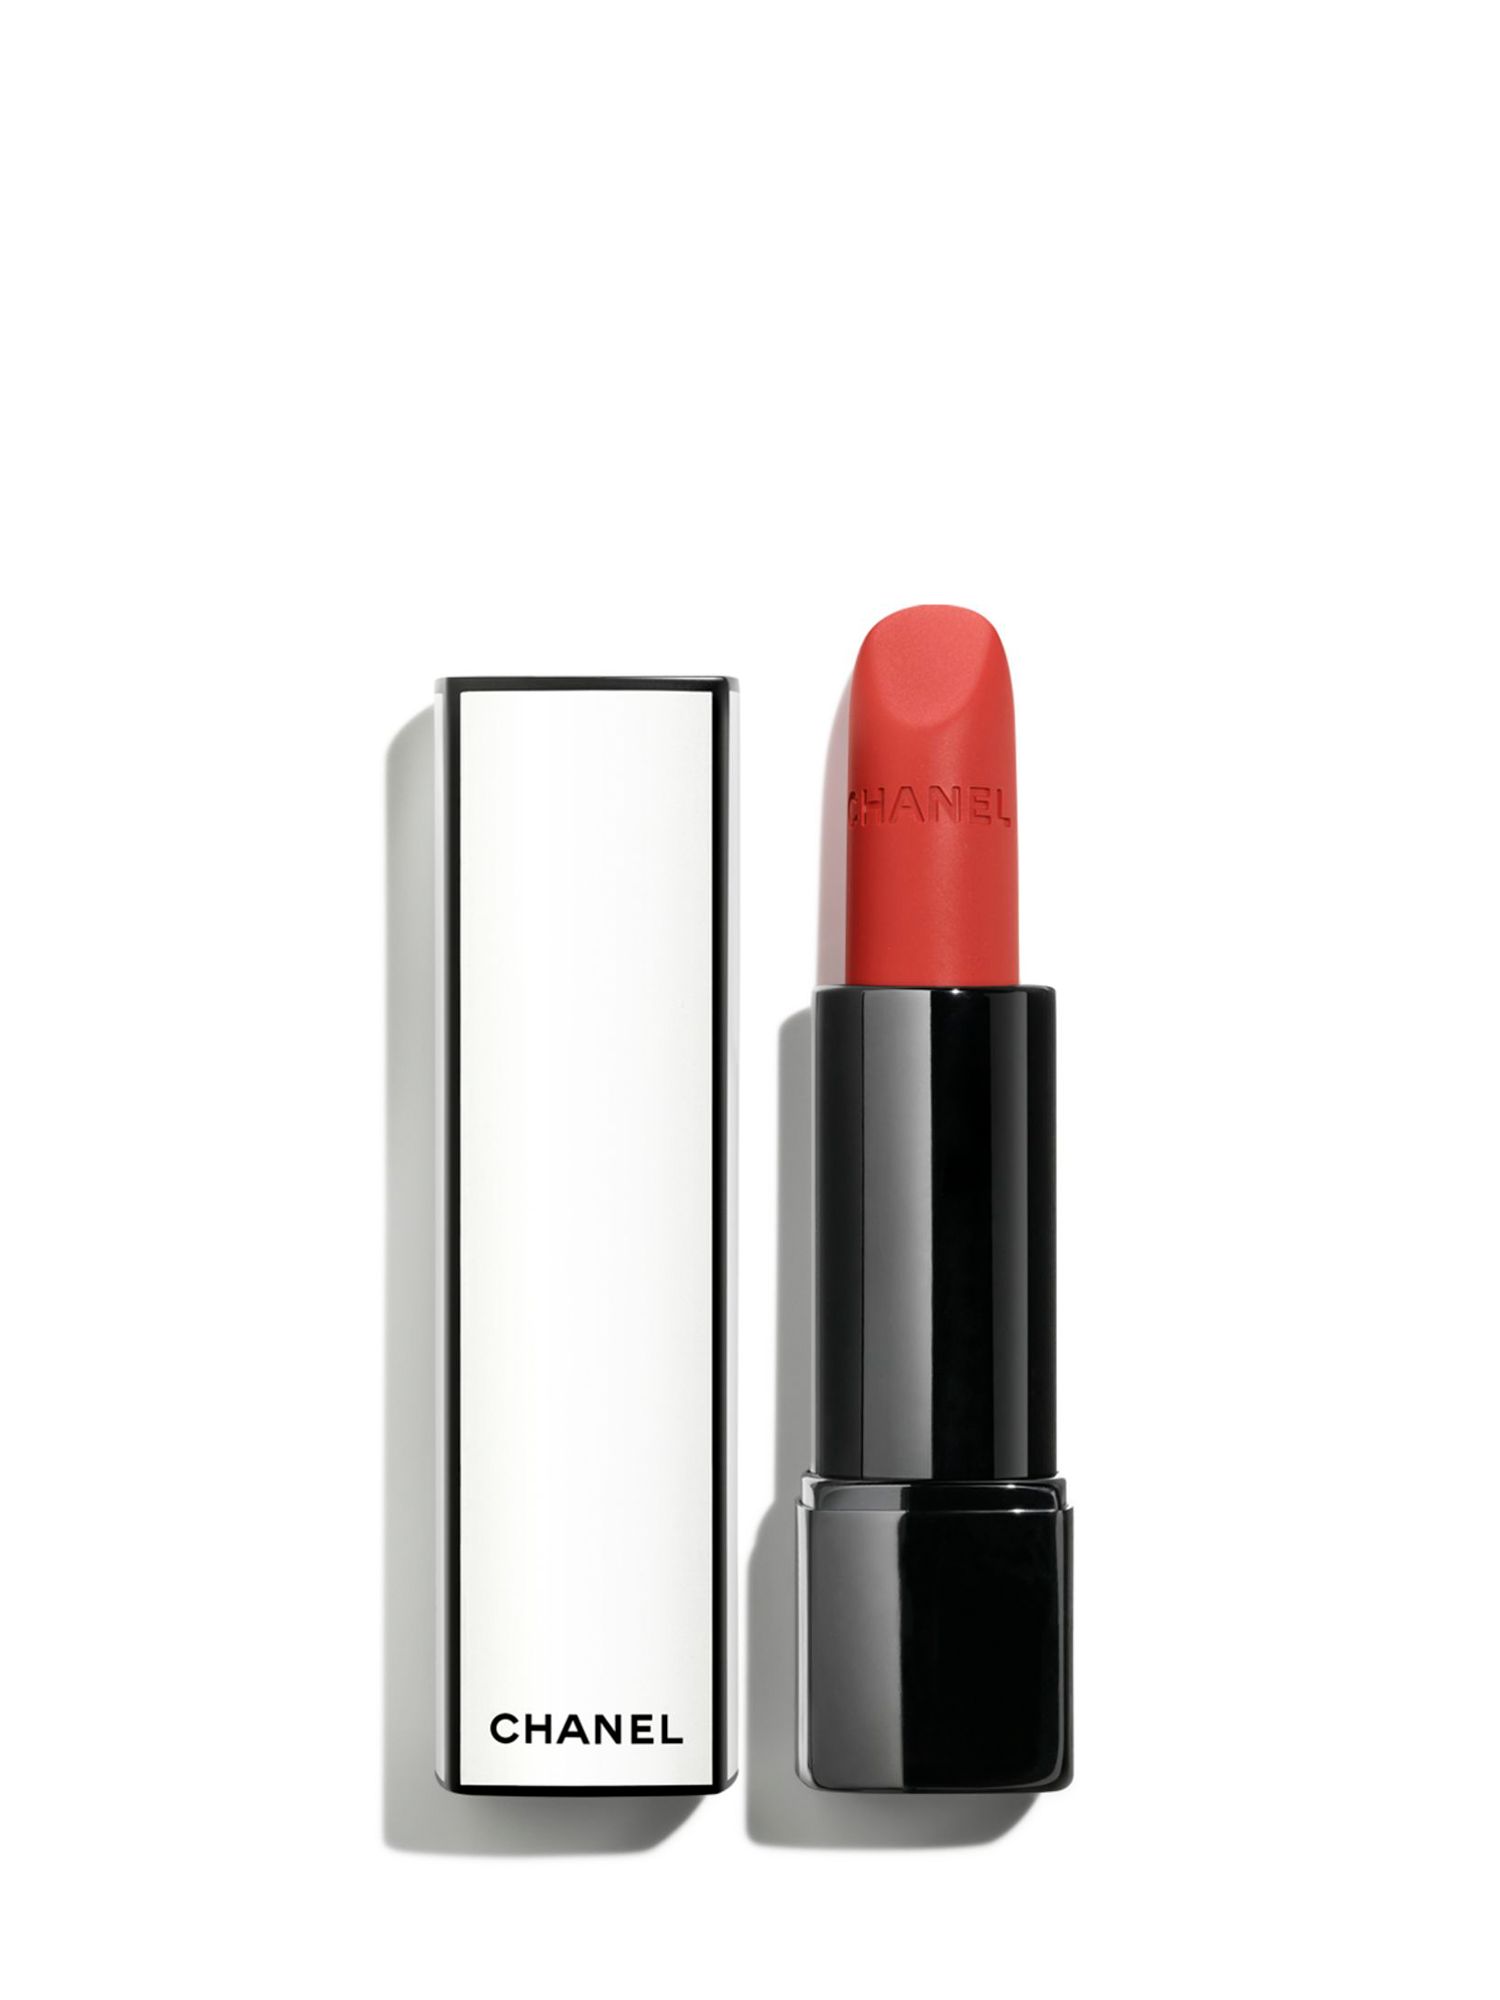 CHANEL Rouge Allure Velvet Nuit Blanche Limited Edition - Luminous Matte Lip Colour, 01:00 1